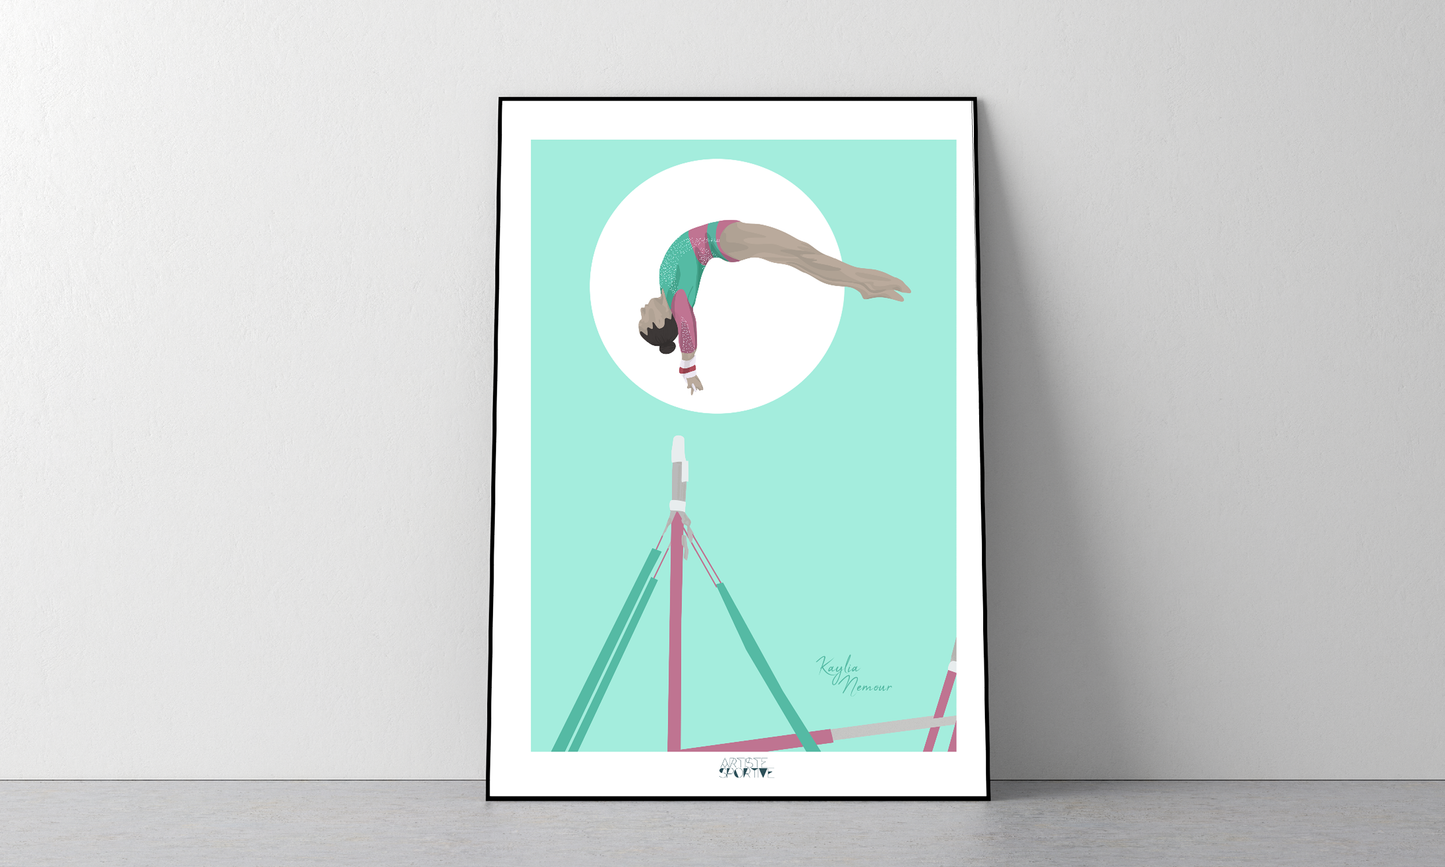 Affiche Gymnastique "Les Barres" - Collection Kaylia Nemour